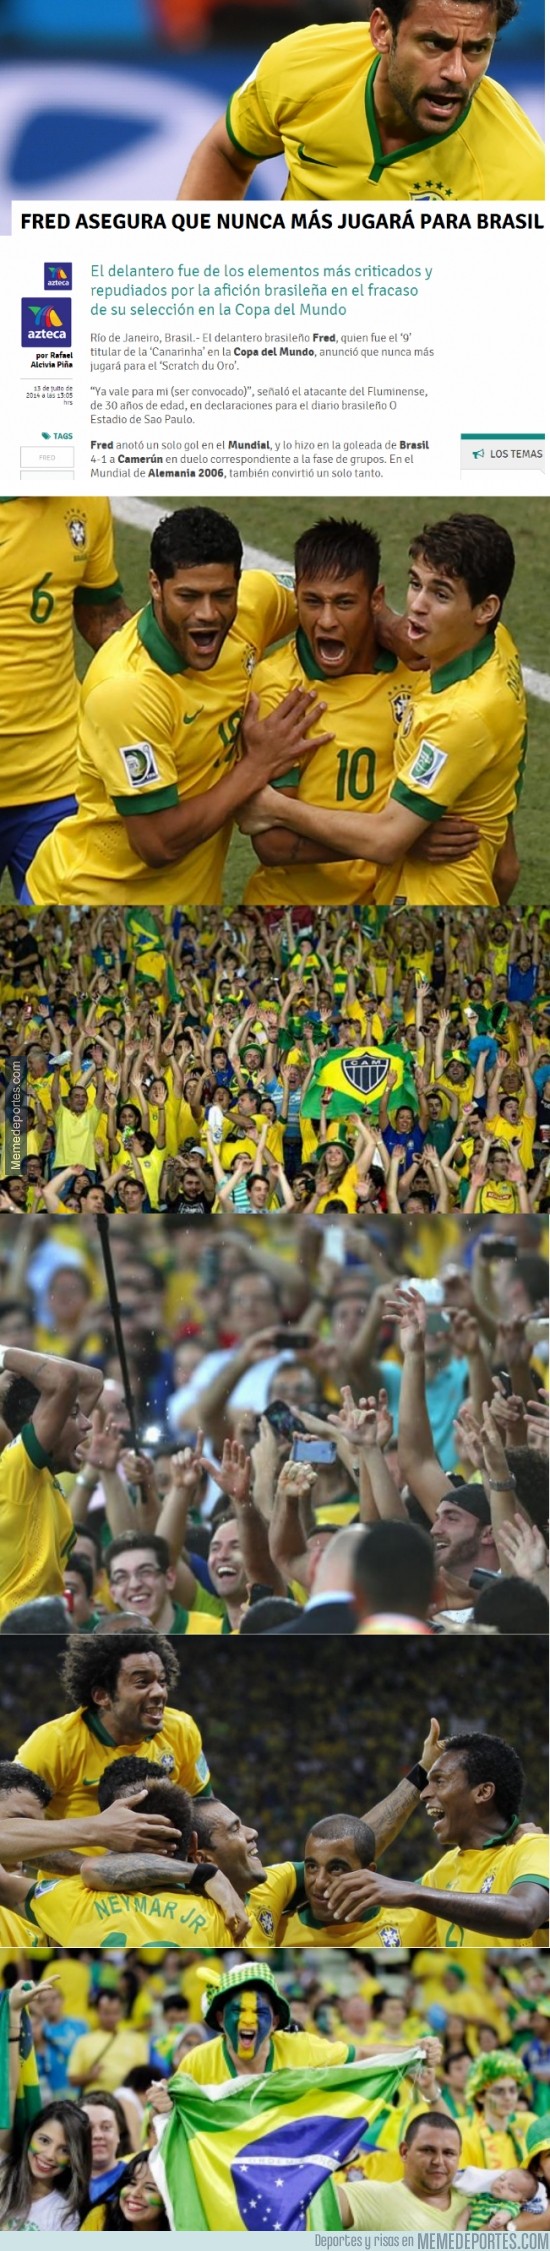 362363 - Todo Brasil está de fiesta por lo que ha dicho Fred